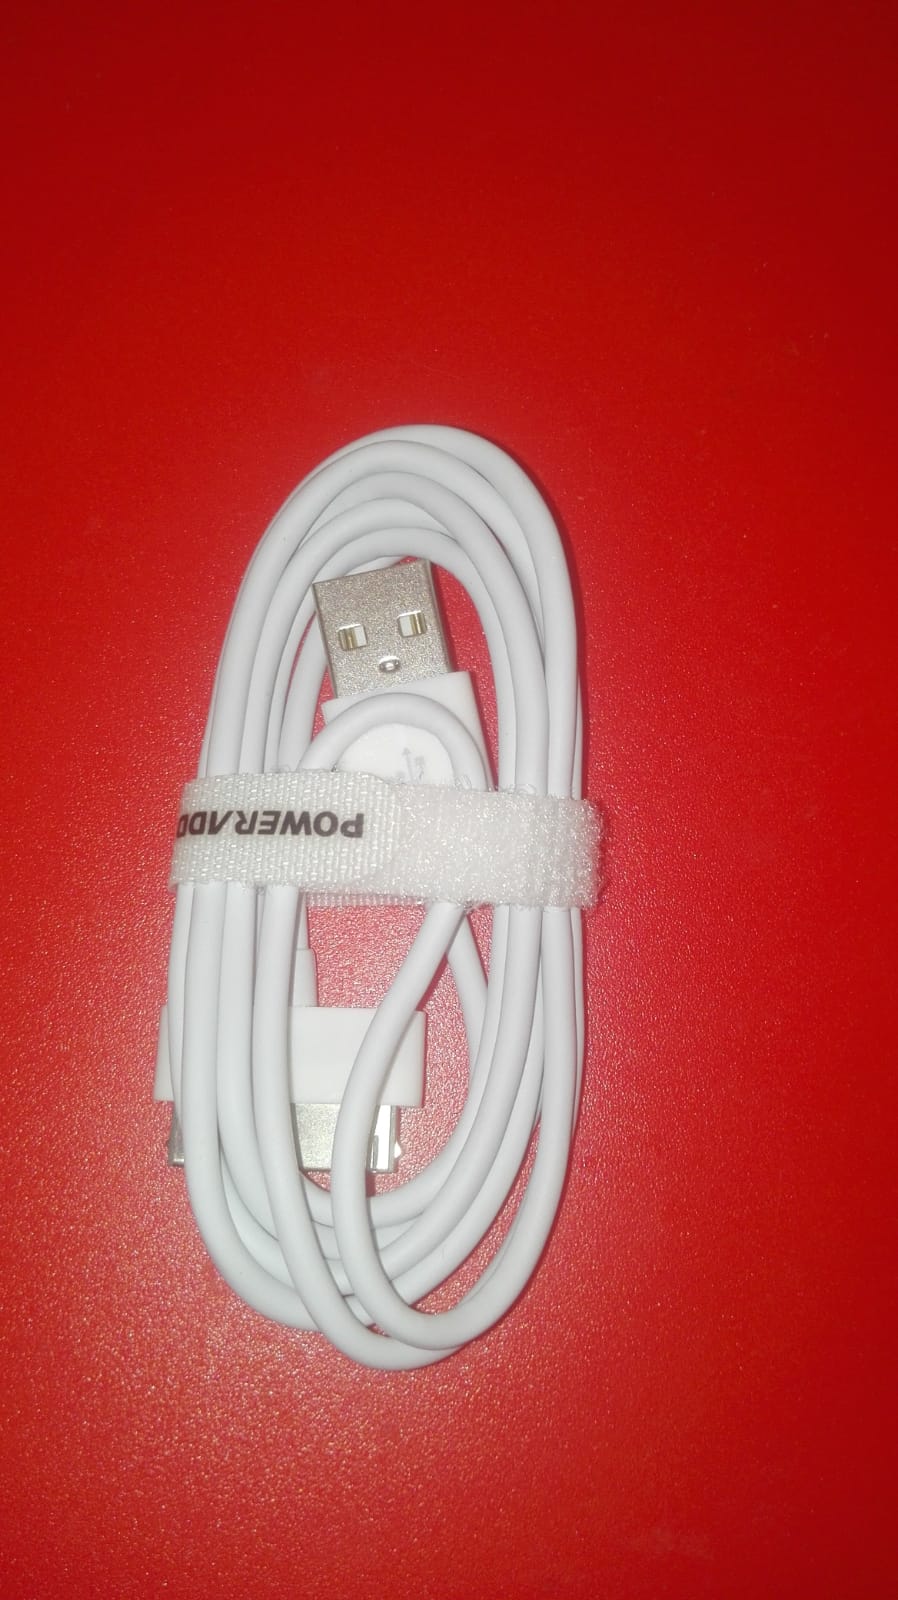 Excelente cable USB para cargar.